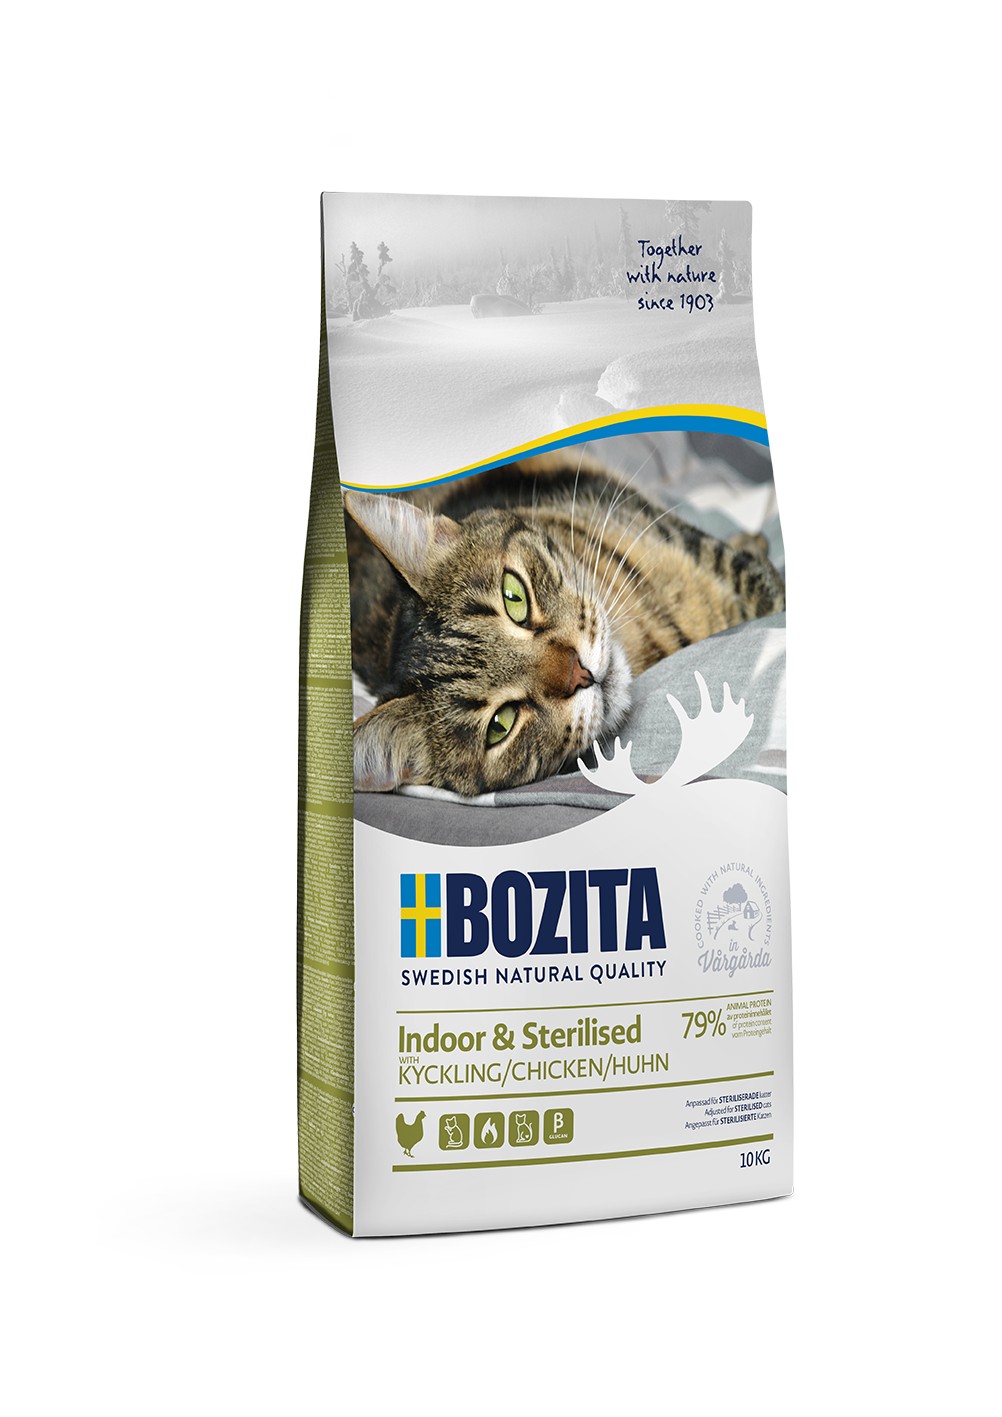 Bozita Indoor & Sterilized Chicken сухой зерновой корм с курицей для домашних стерилизованных кошек, 10кг